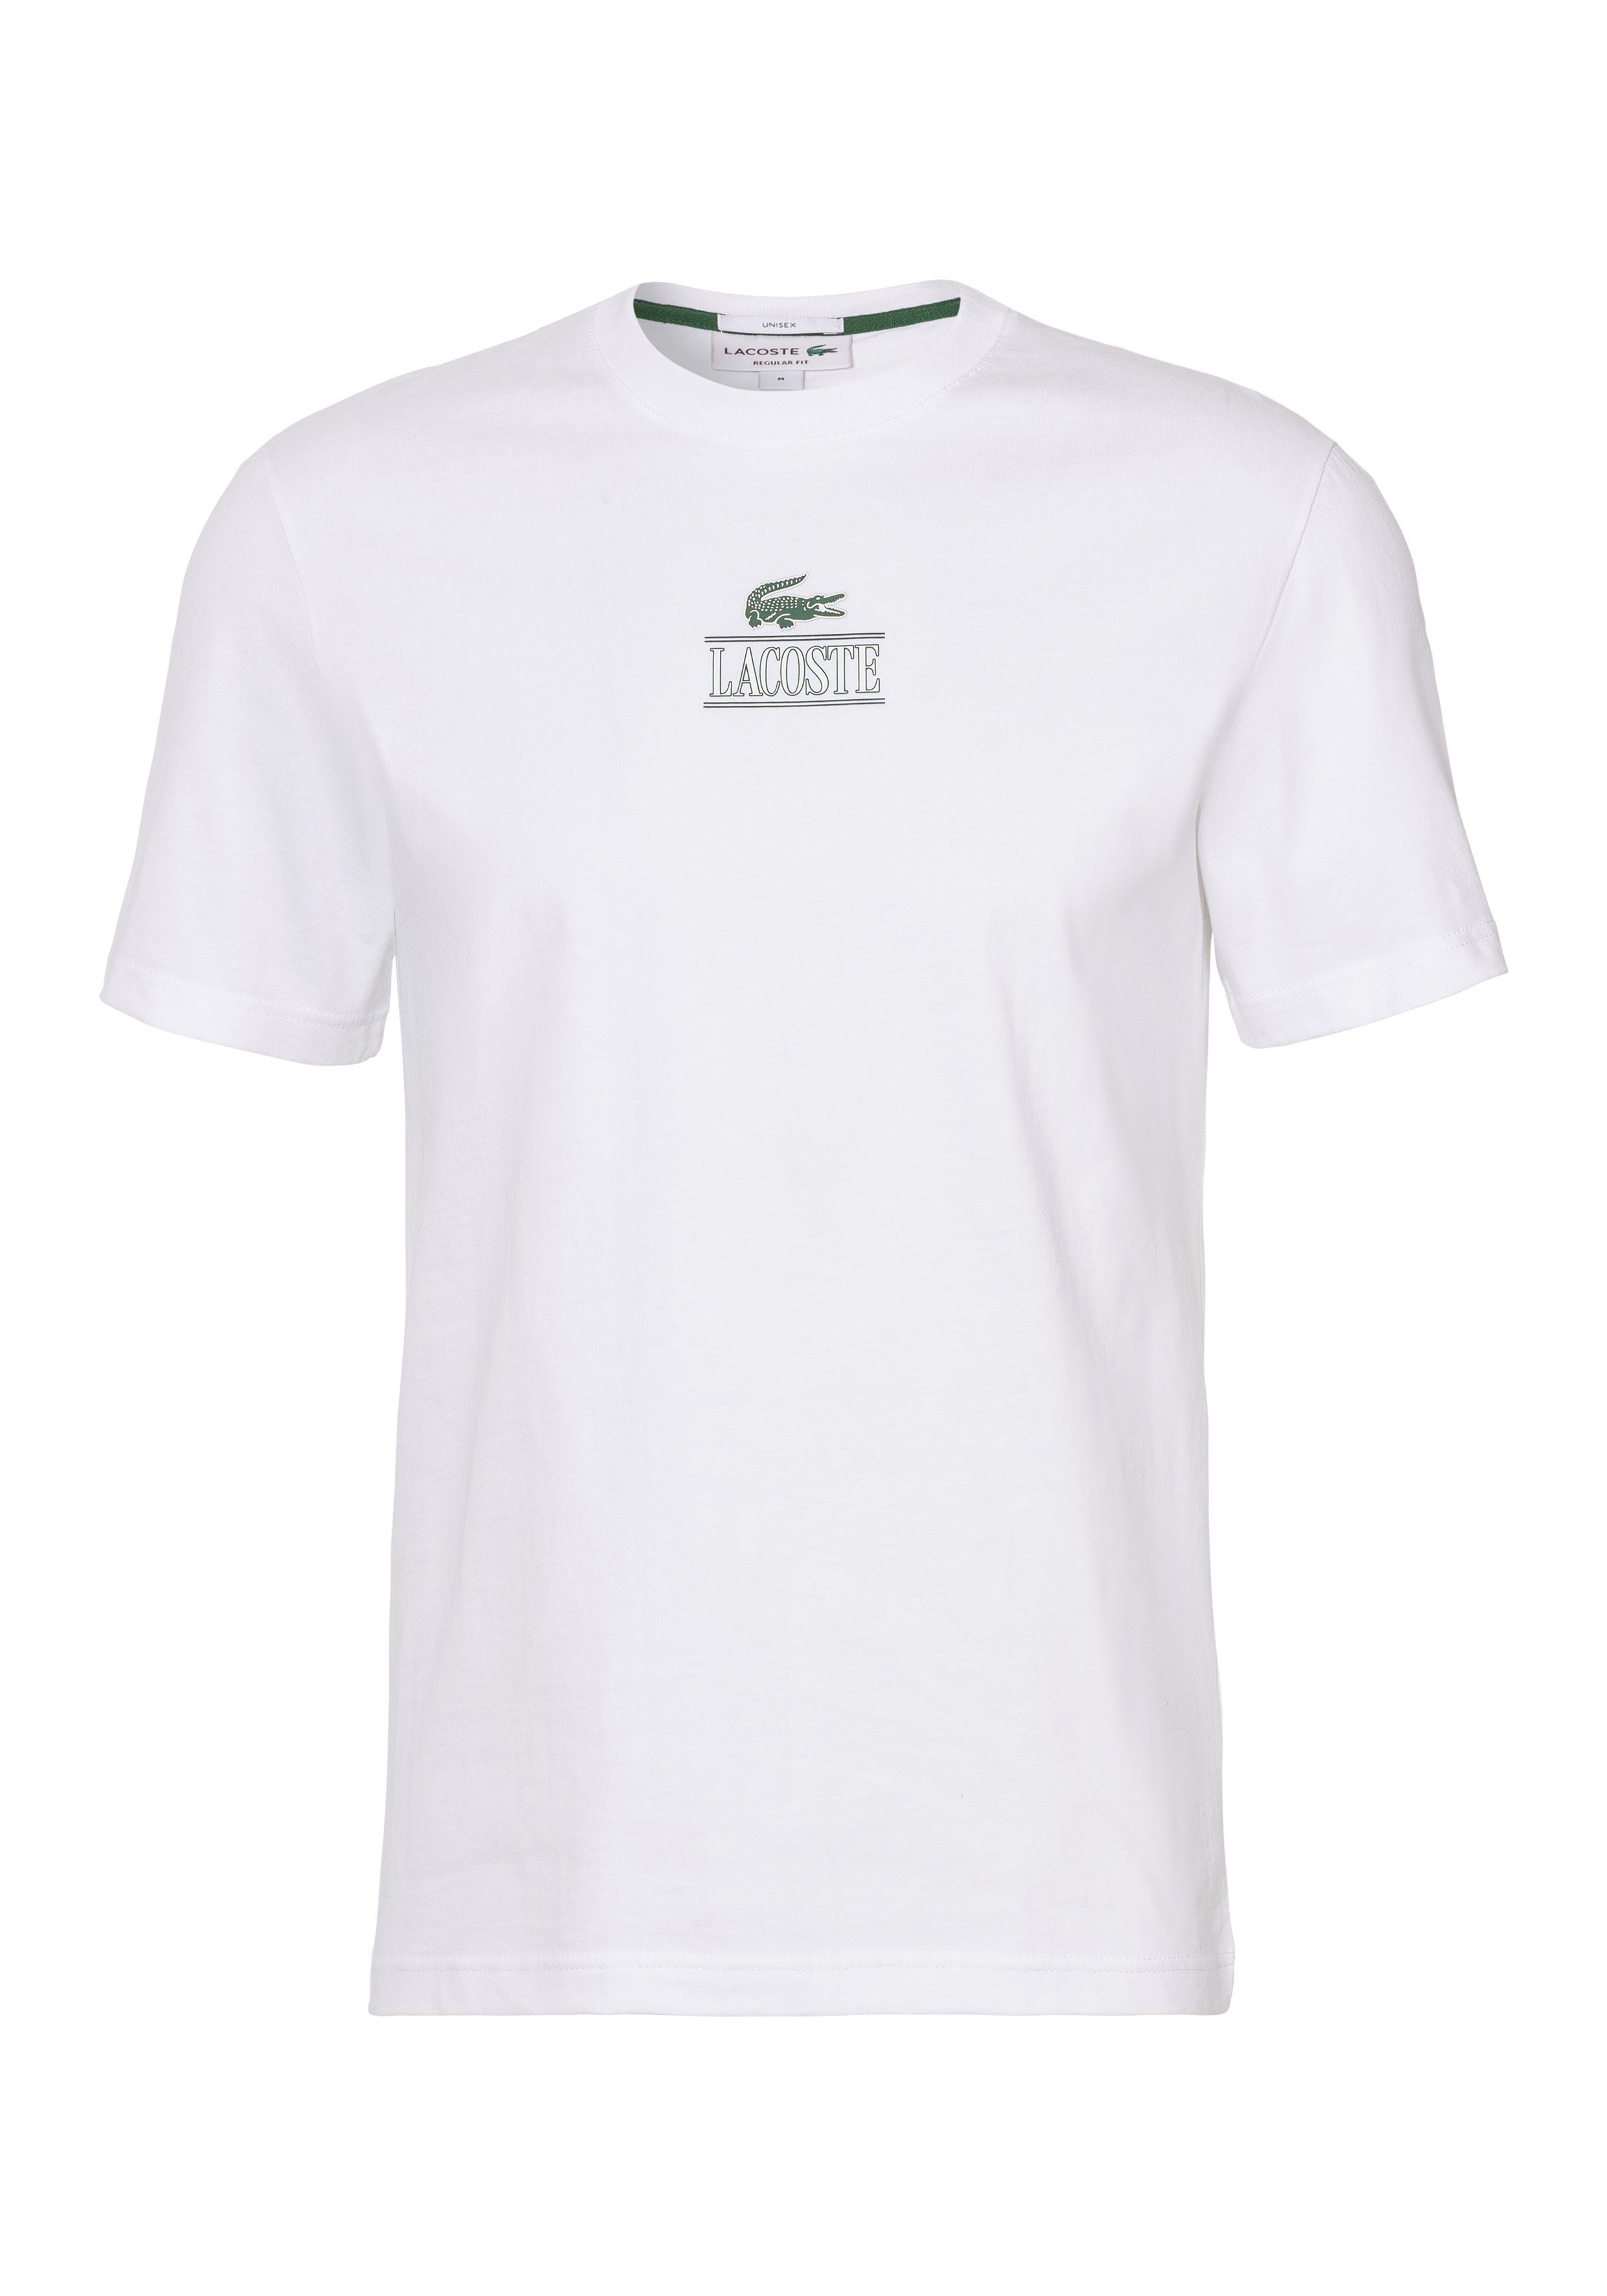 der T-Shirt Brust WHITE mit Lacoste T-SHIRT Lacoste Print auf